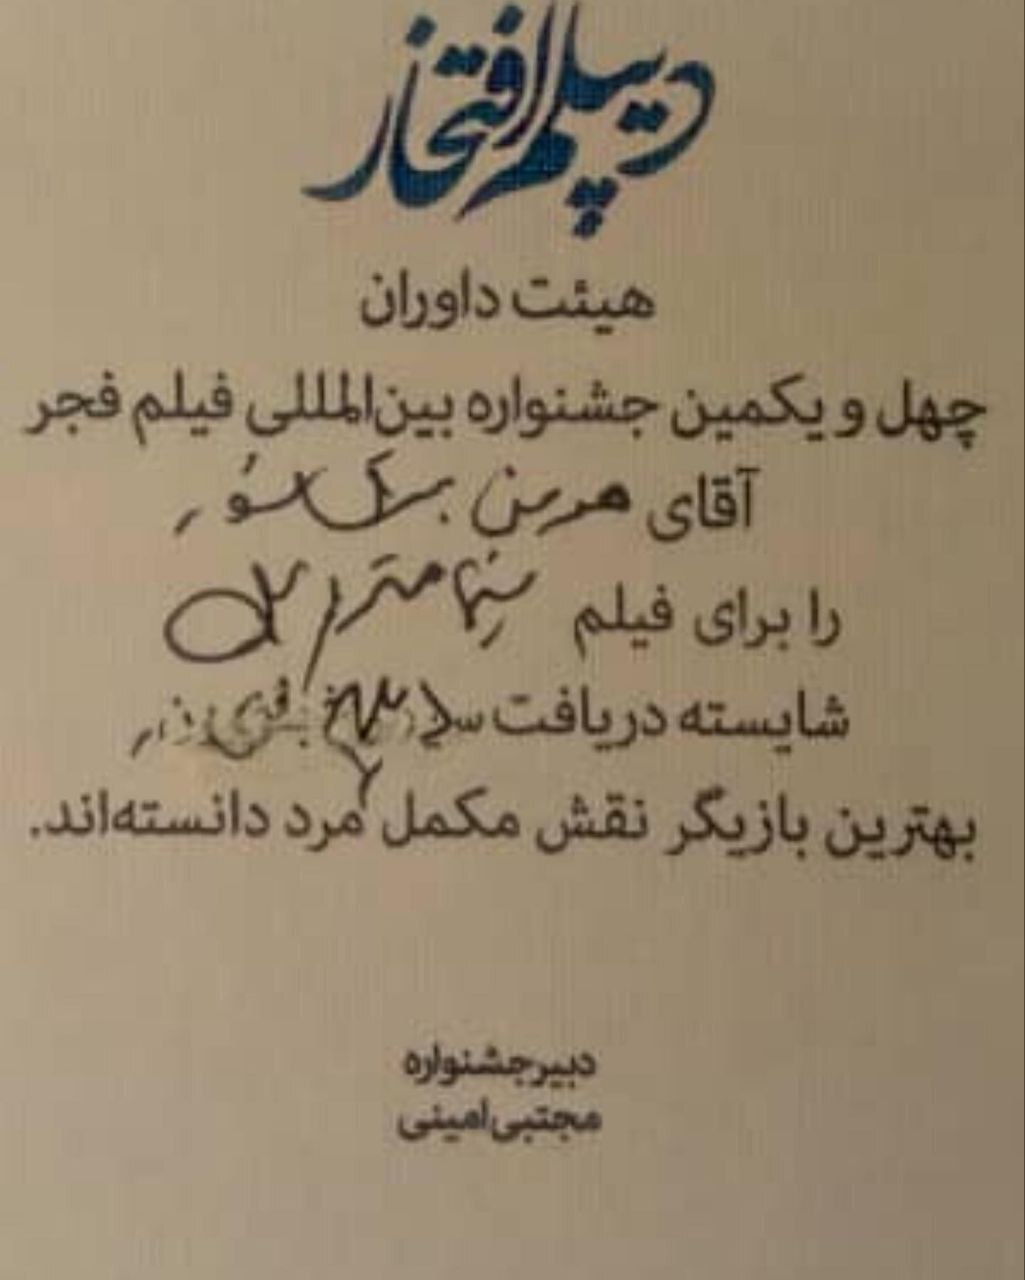 متن دیپلم افتخار هومن برق نورد در جشنواره فجر